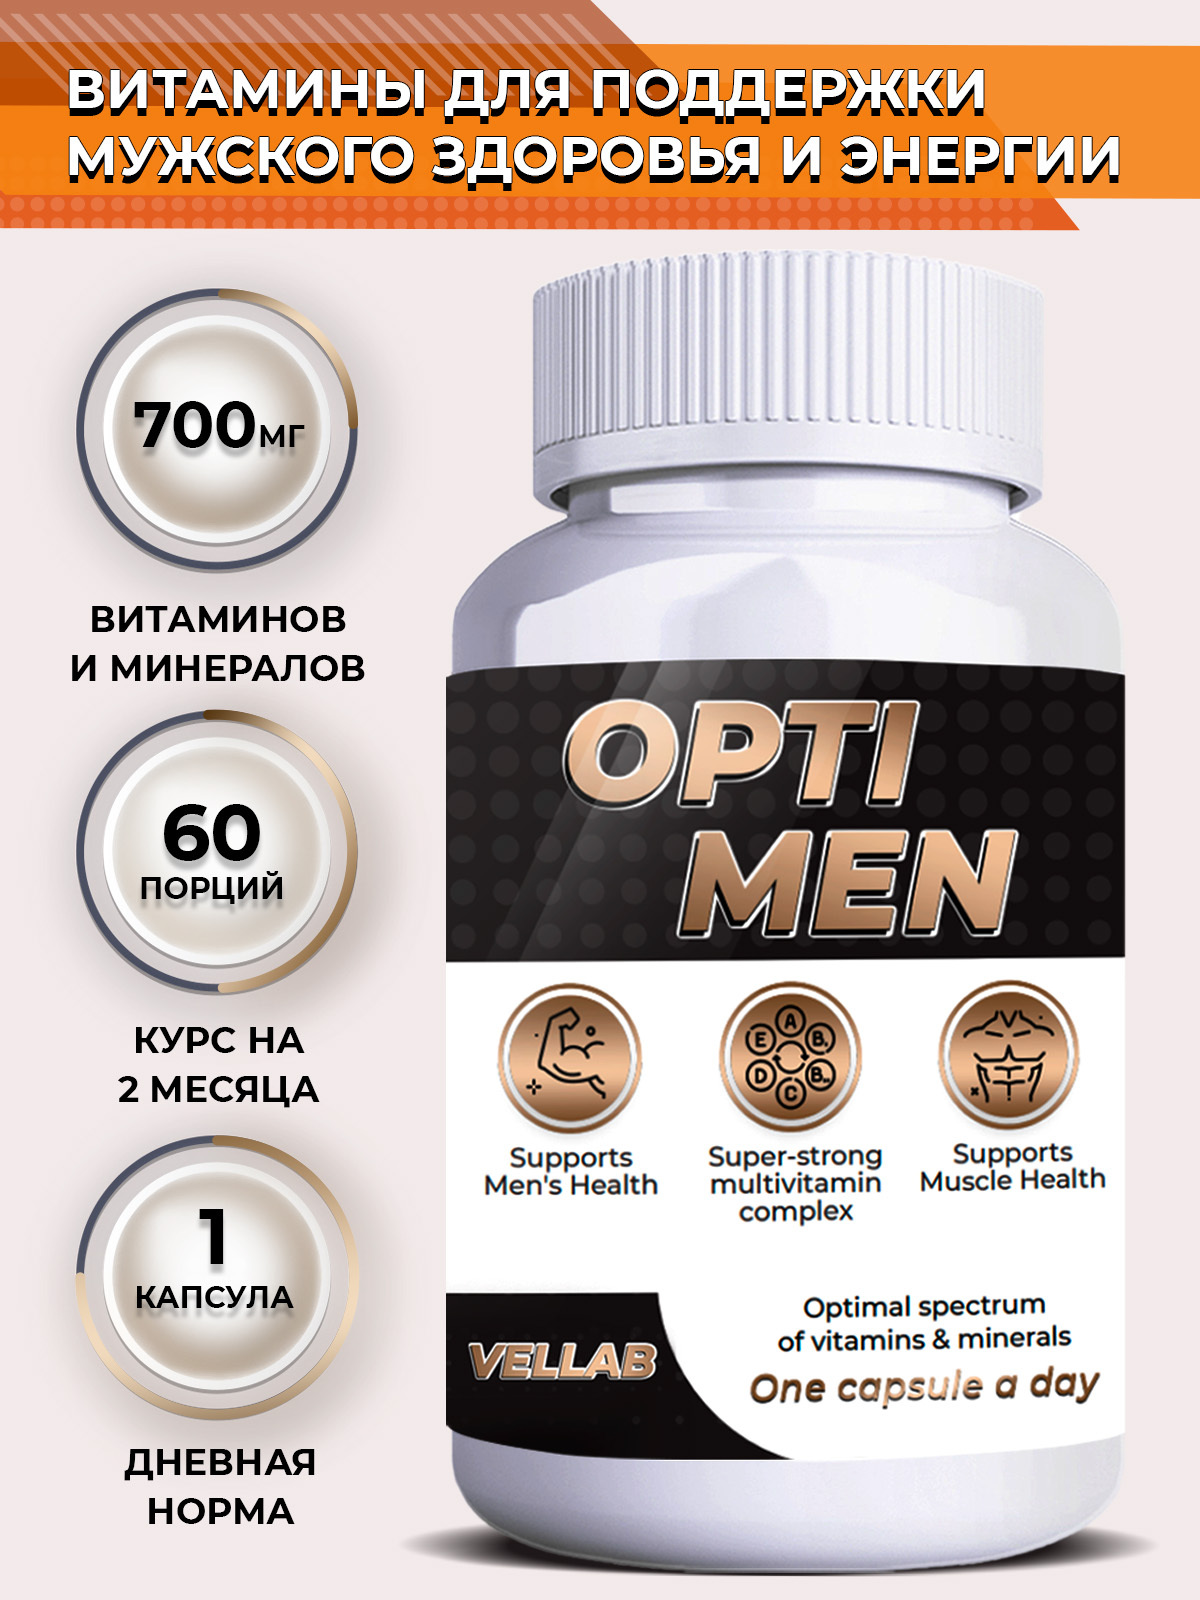 Витамины для мужчин 50 отзывы. Комплекс витаминов для мужчин. Полезные витамины для мужчин. Мужские витамины для мужчин. Витамины для мужчин в капсулах.